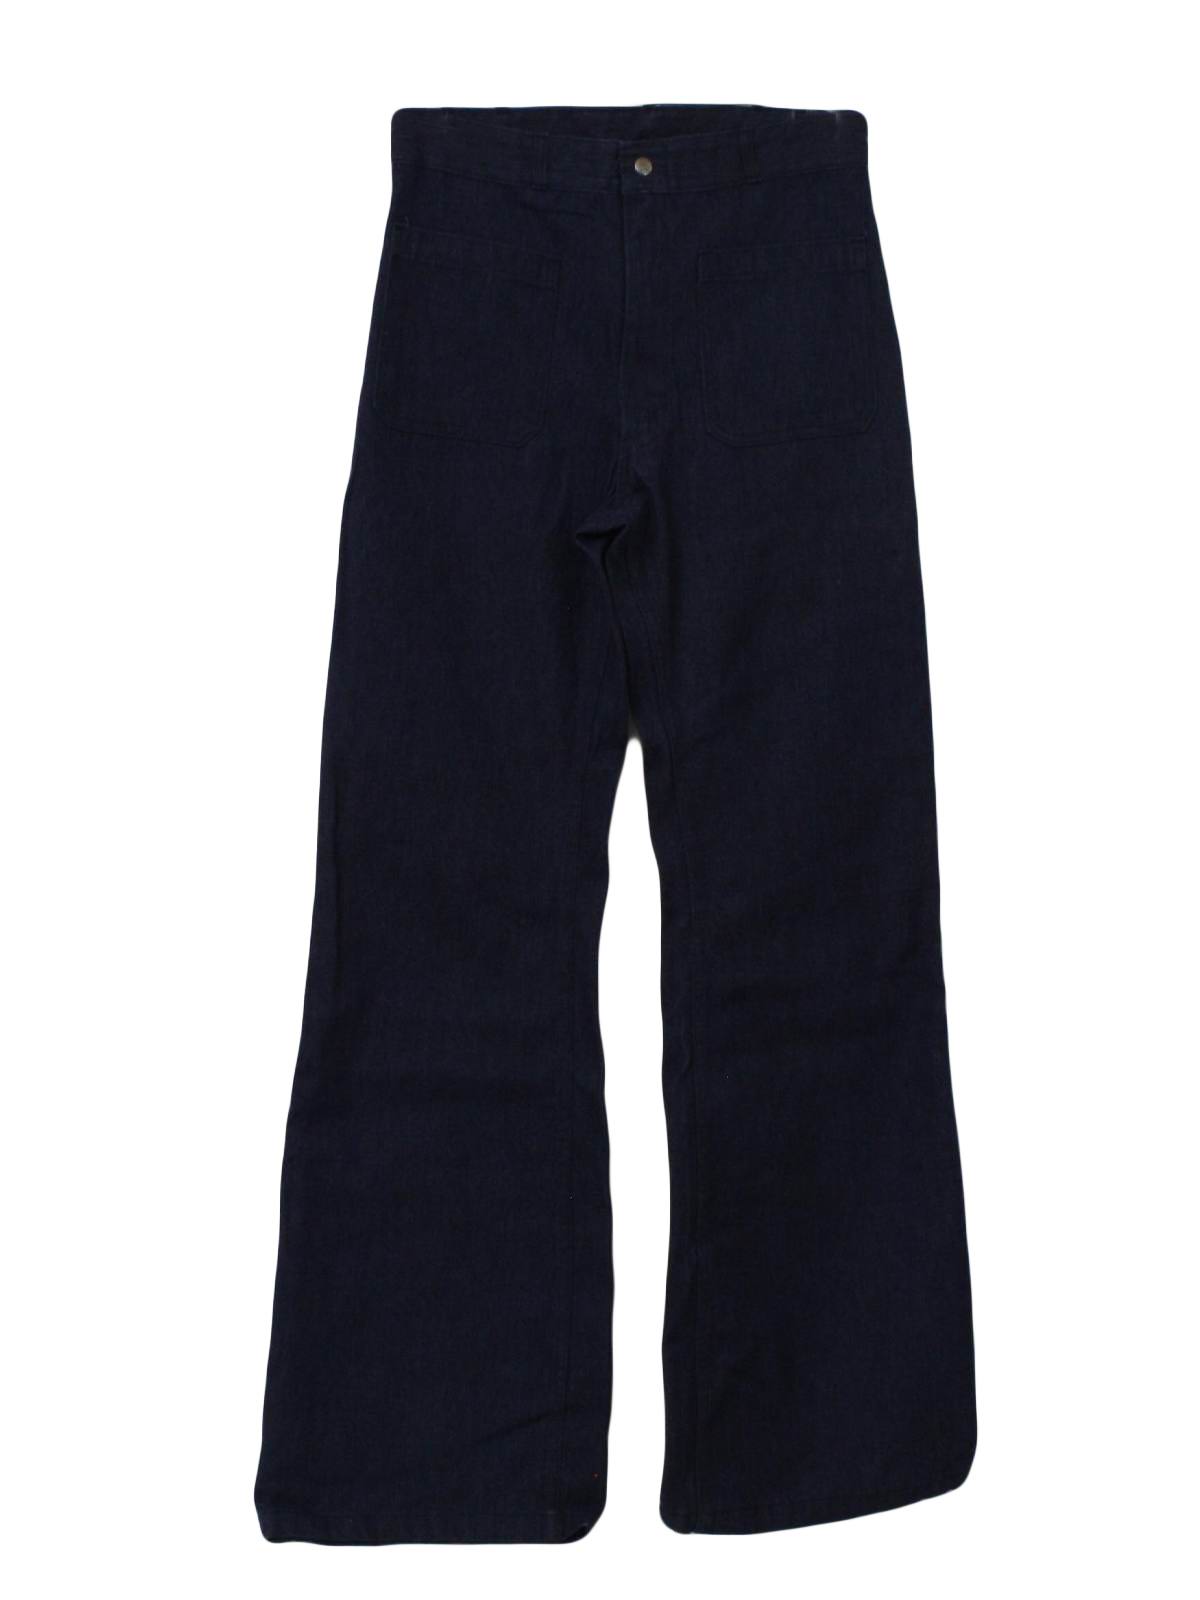 Vintage Seafarer 70's Bellbottom Pants: 70s -Seafarer- Mens dark blue ...